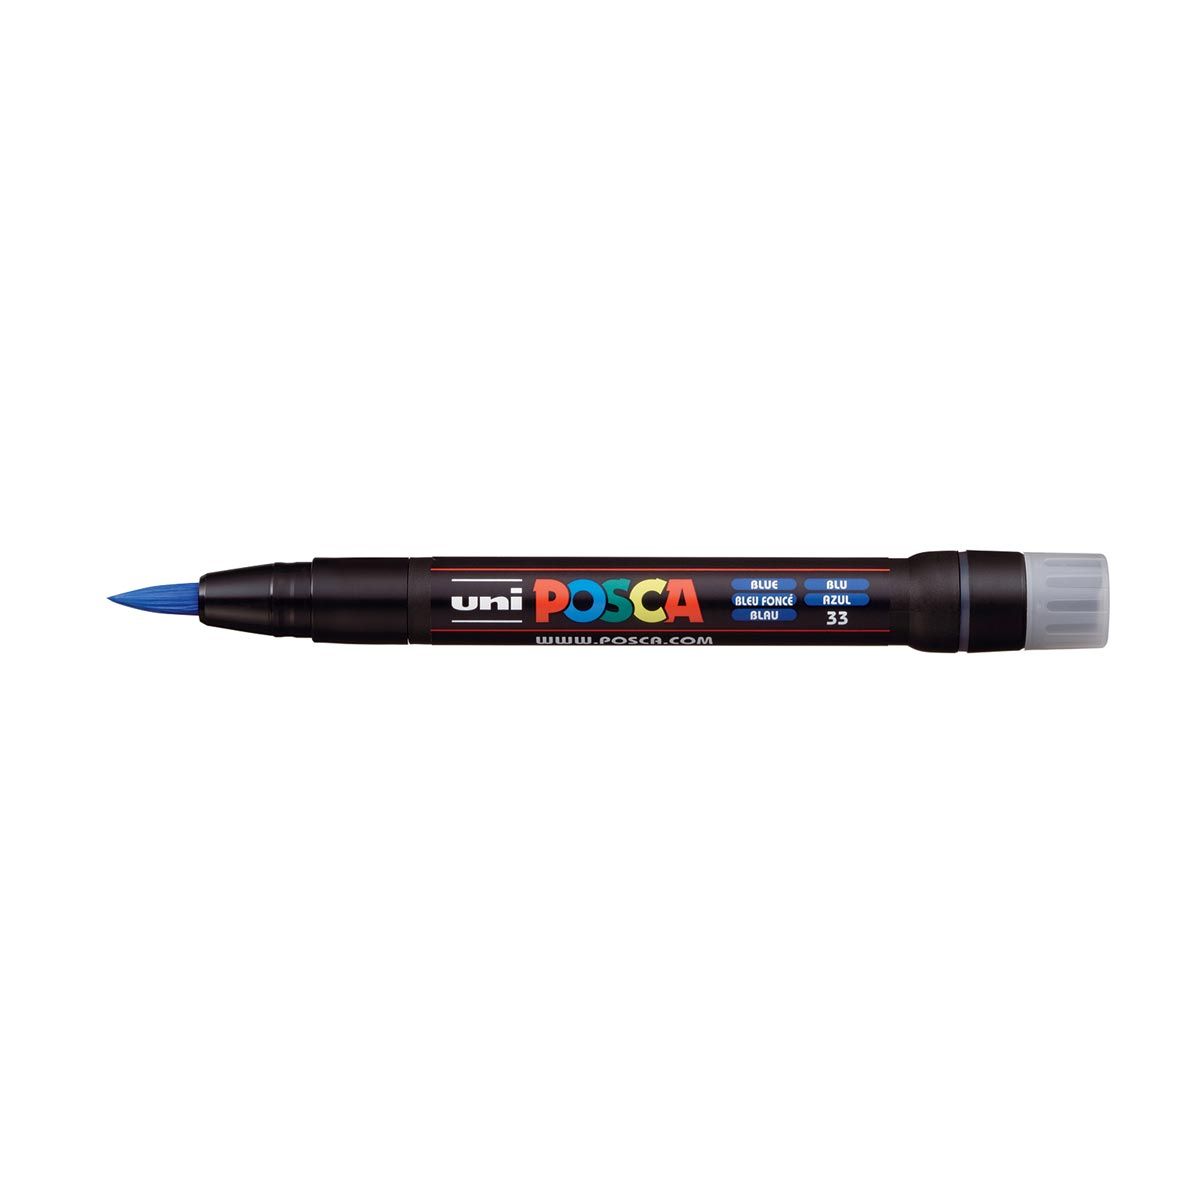 UNI POSCA PCF-350 Brush Tipped Marker Pen Blue